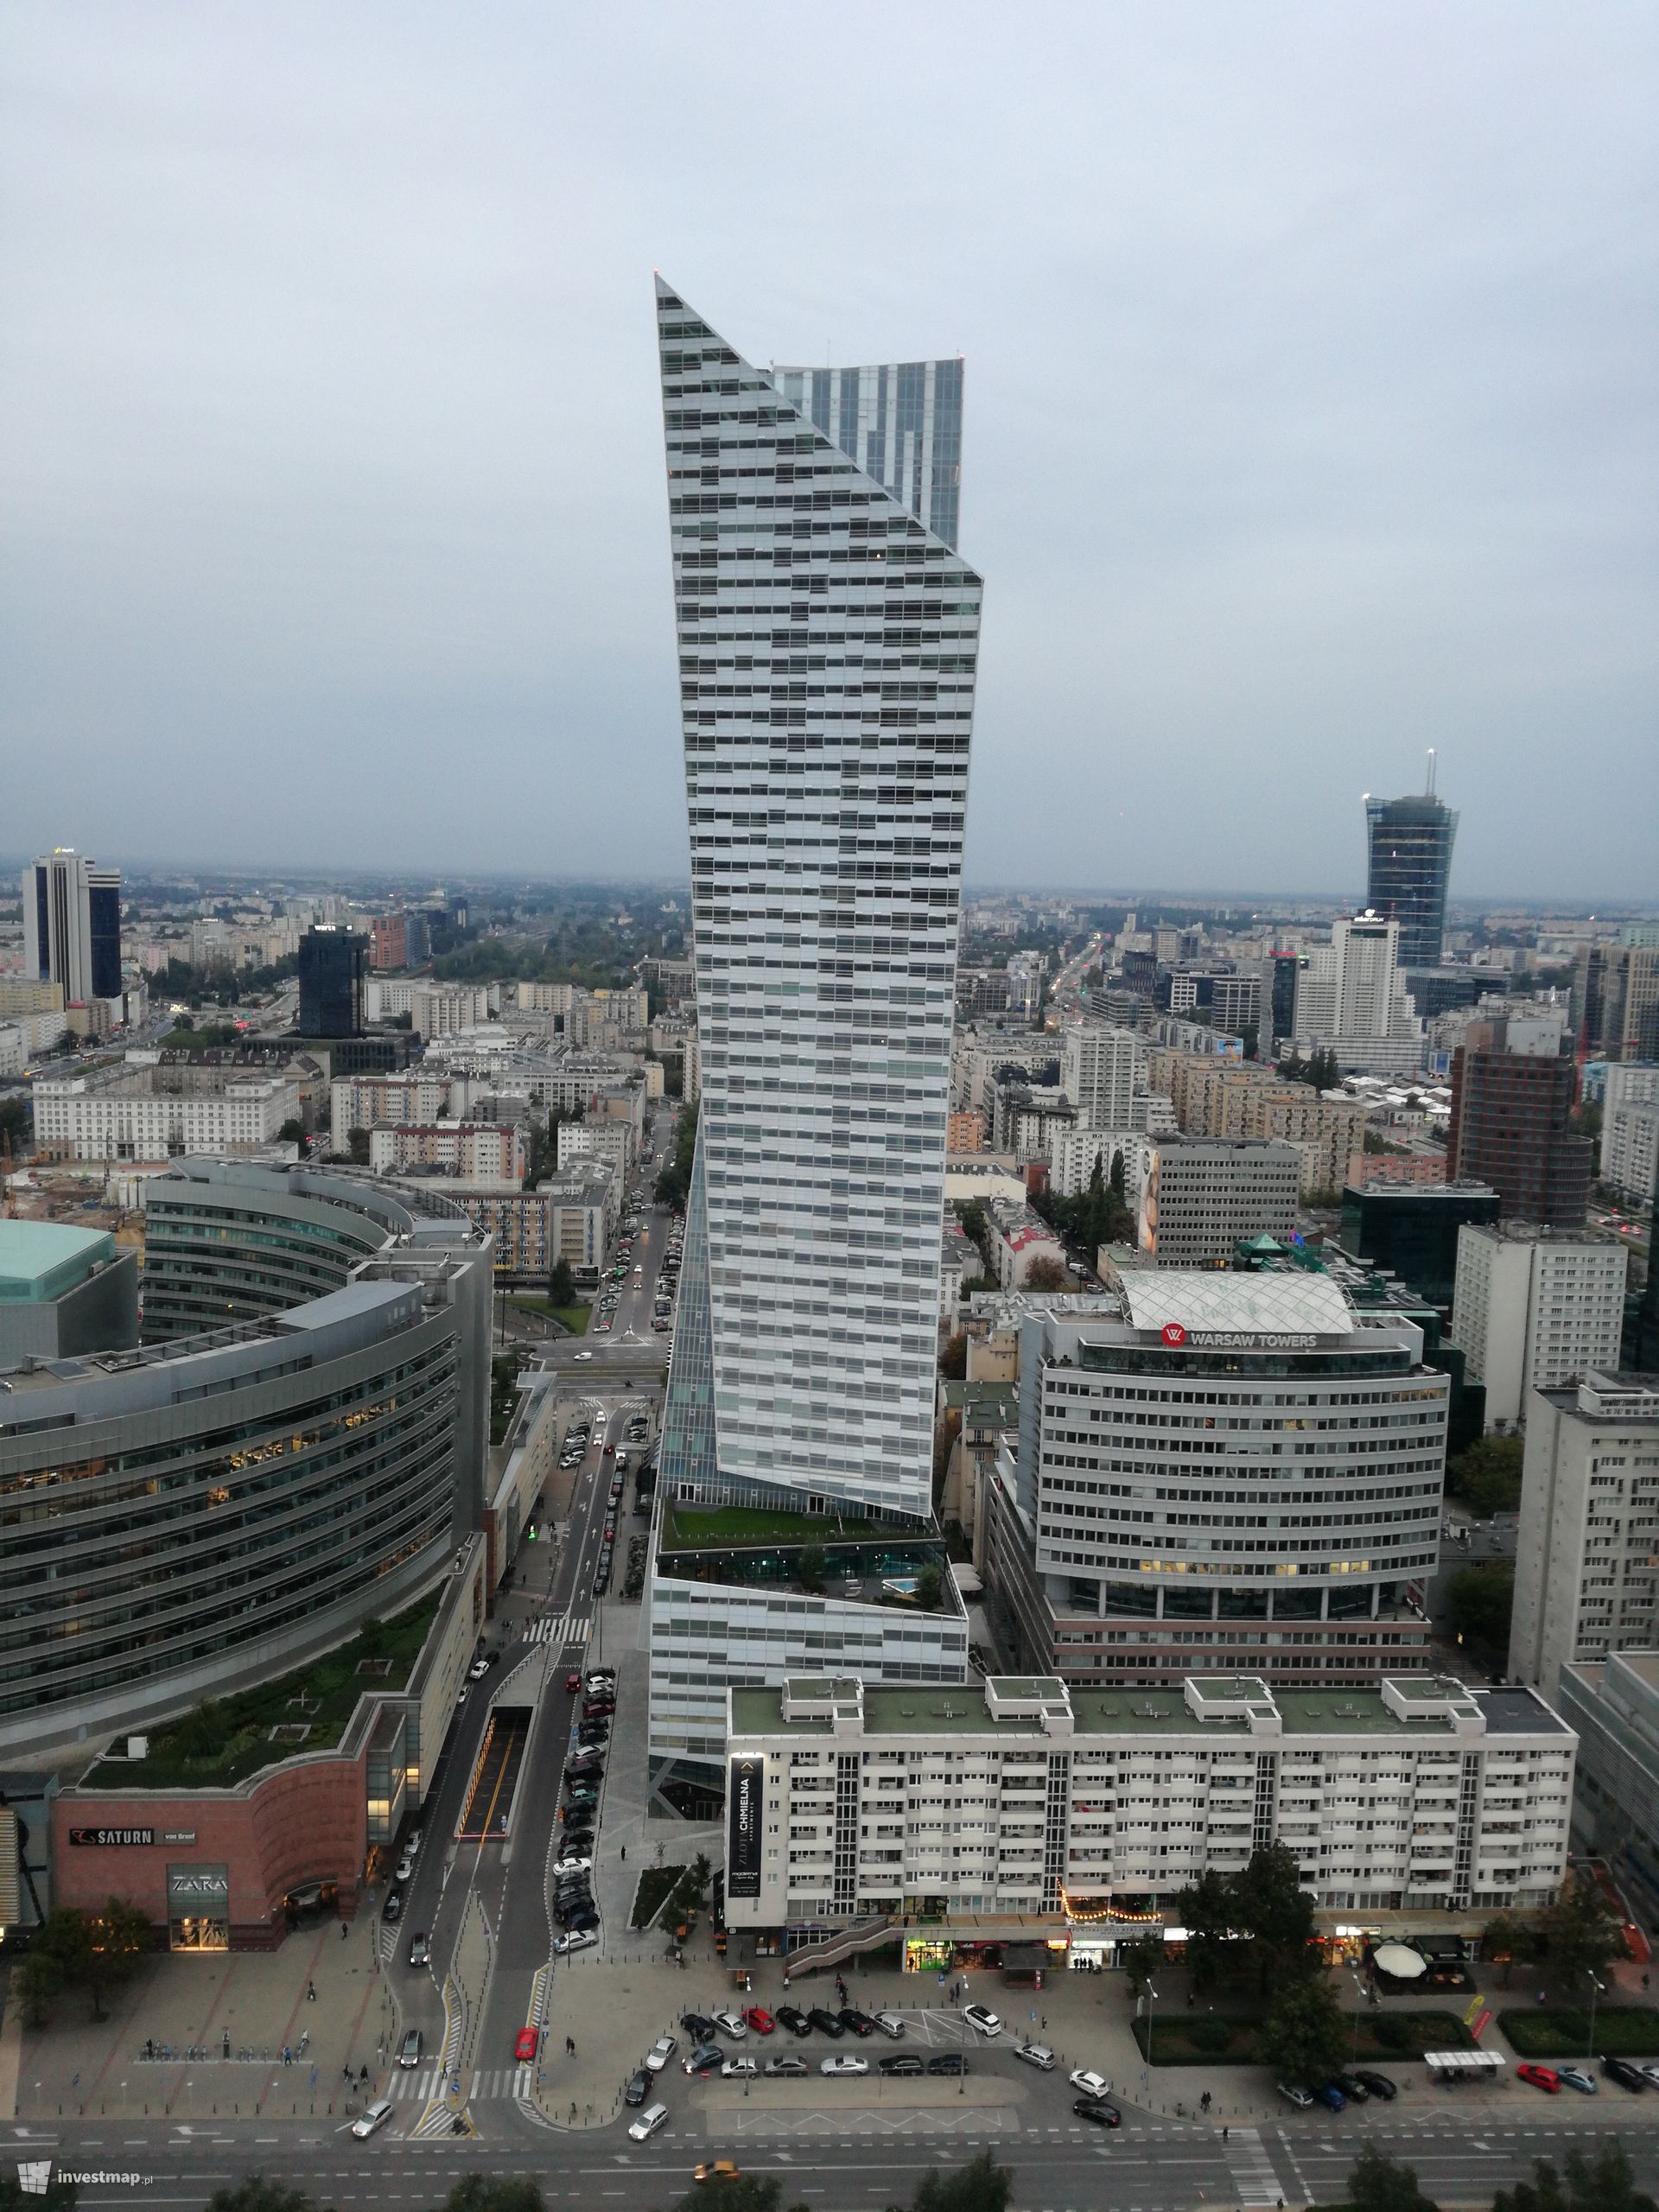 Niemiecka grupa Livos zakupiła 63 lokale mieszkalne w wieżowcu Złota 44 w Warszawie